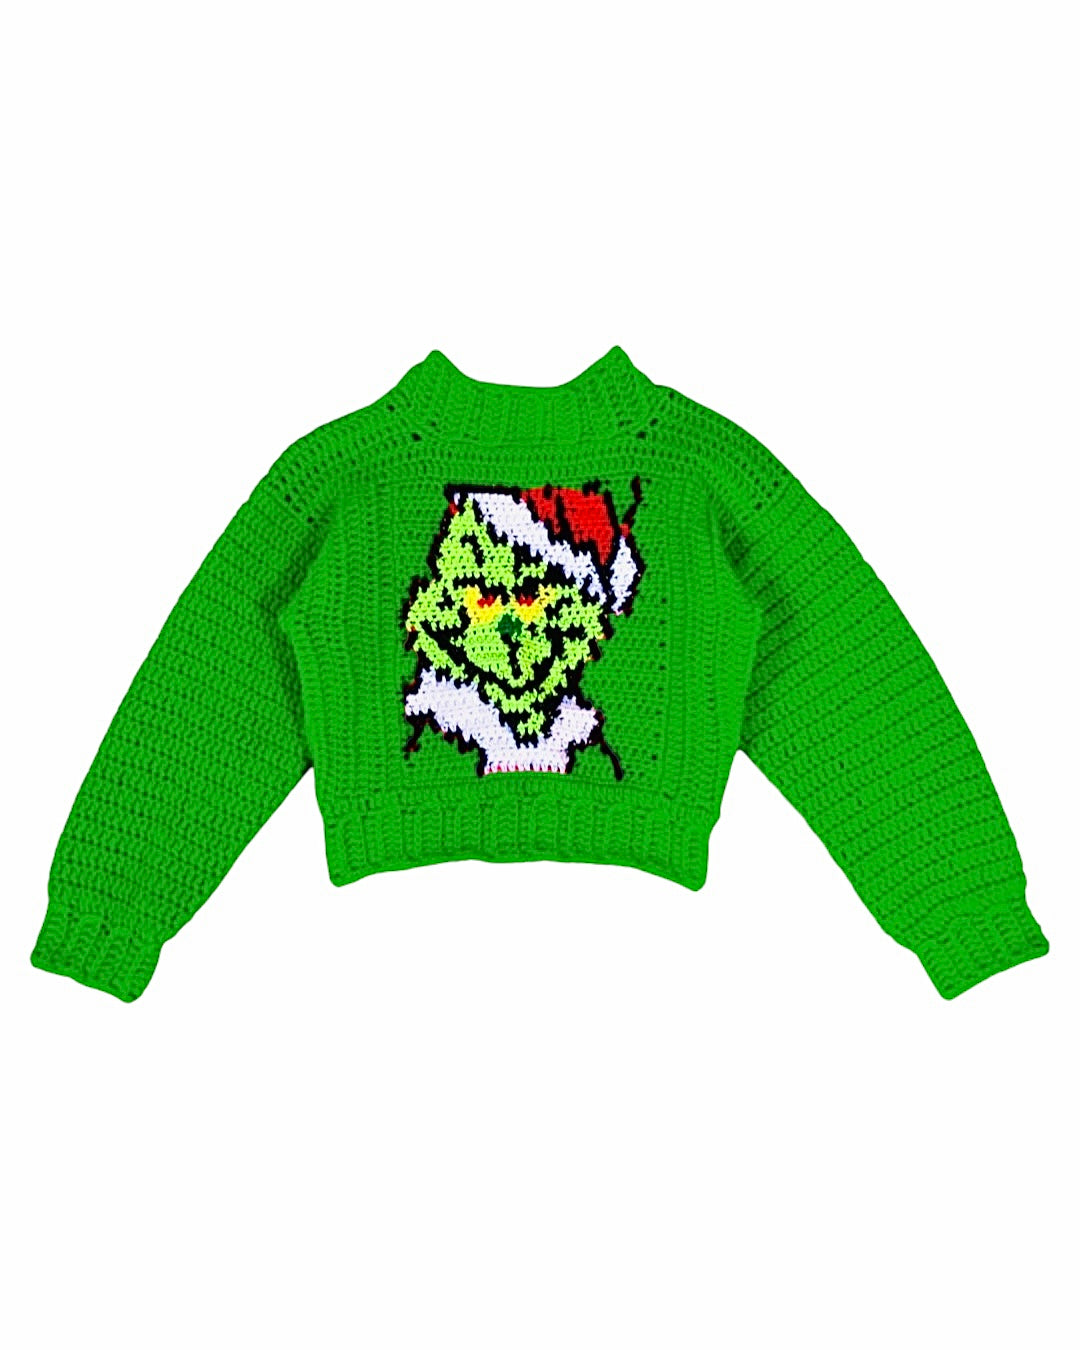 クリスマスかぎ針編みのセーター